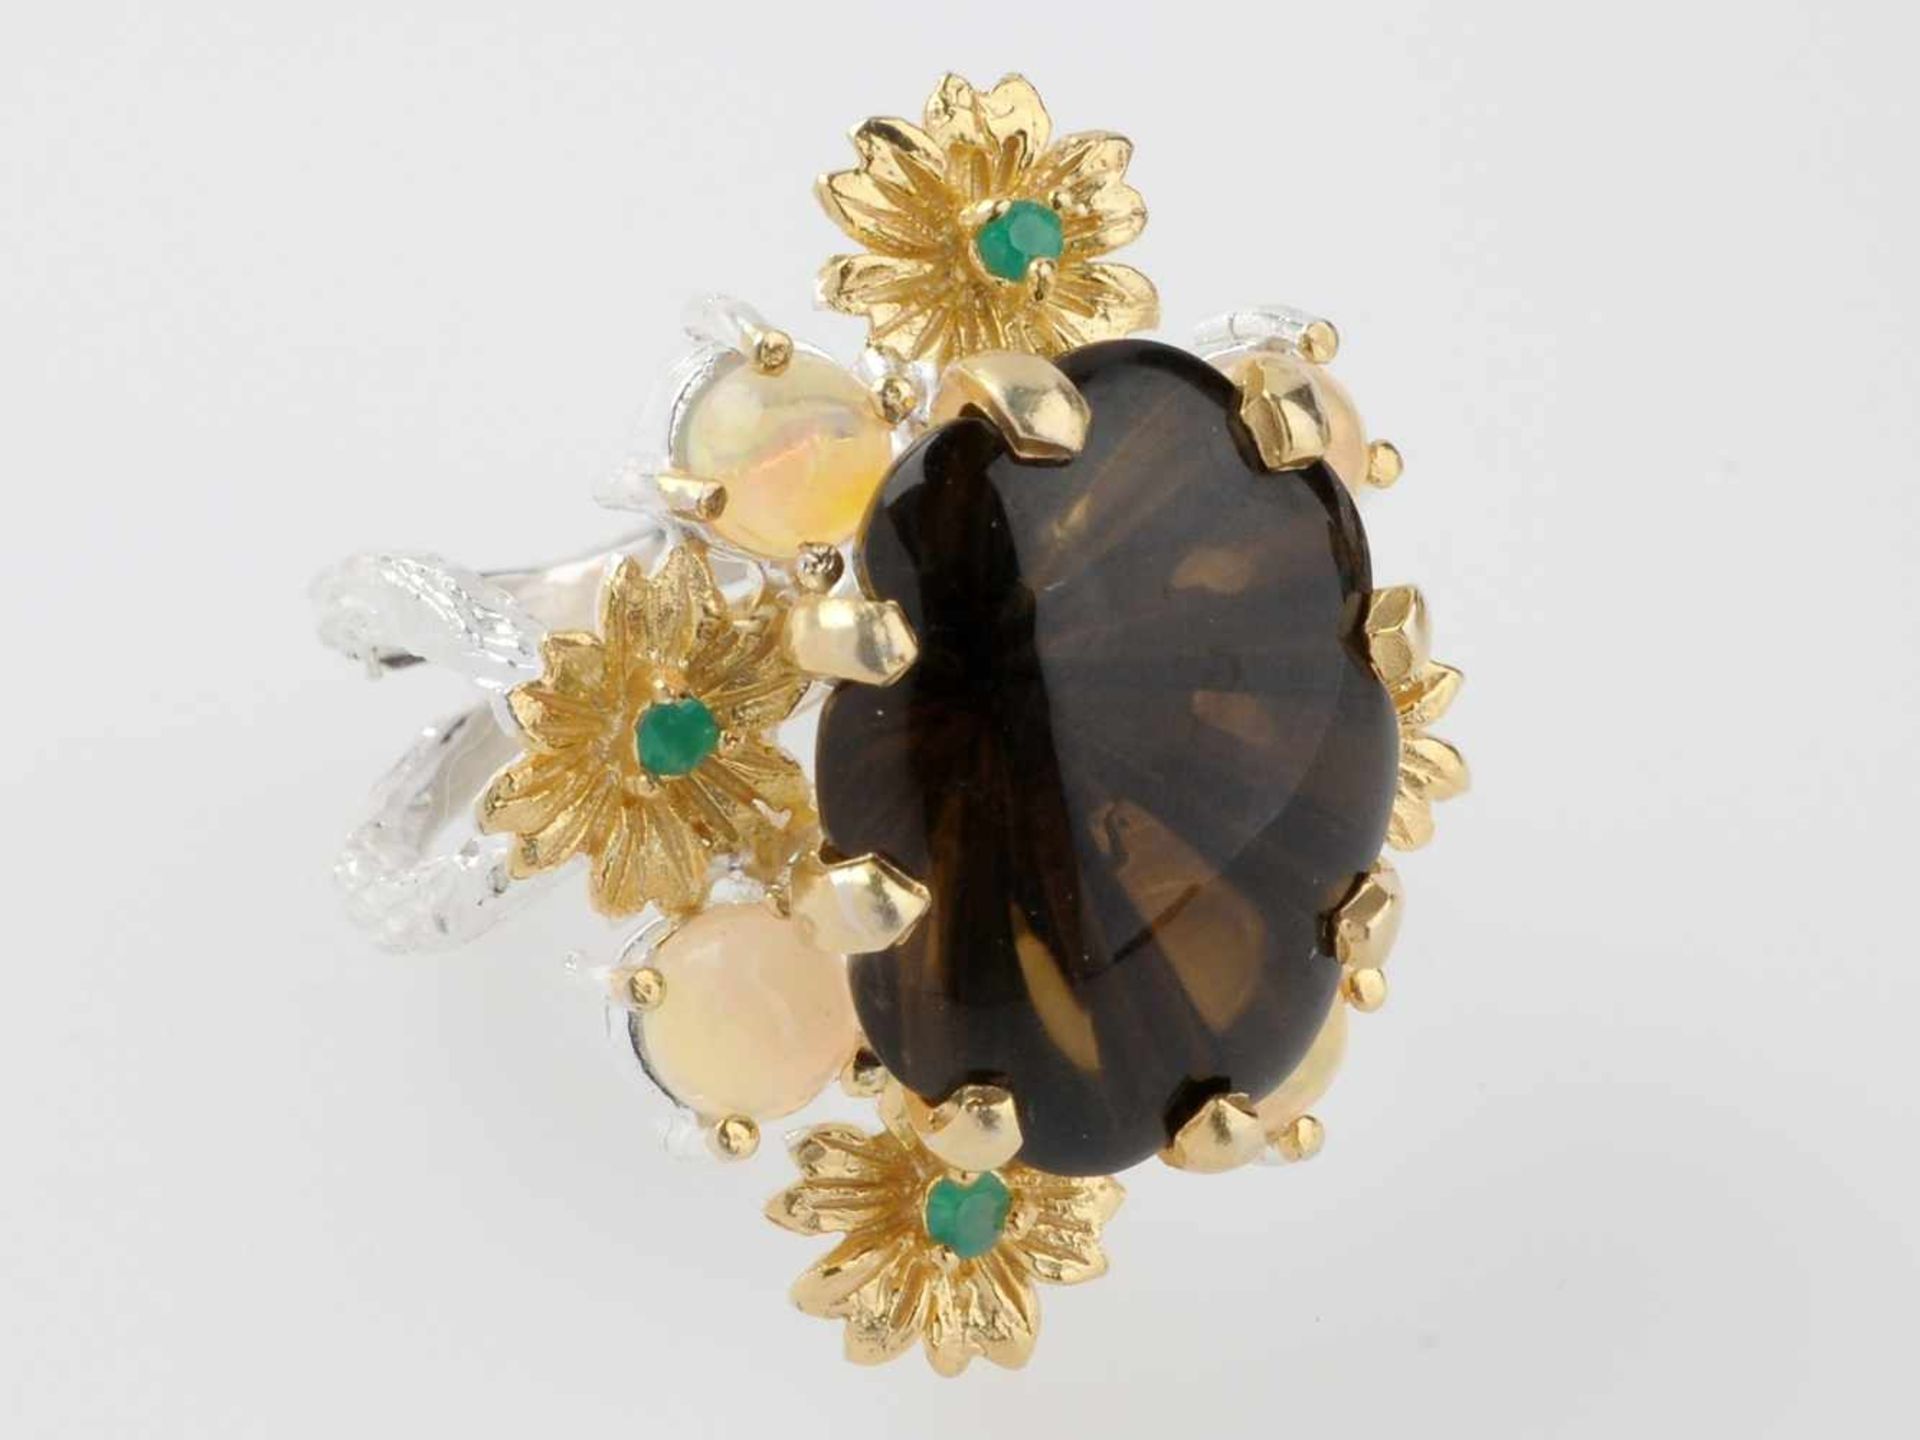 Designer-Ring mit Rauchtopas925er Silber, part. vergoldet. Vegetabil gestaltete, zweisträngige